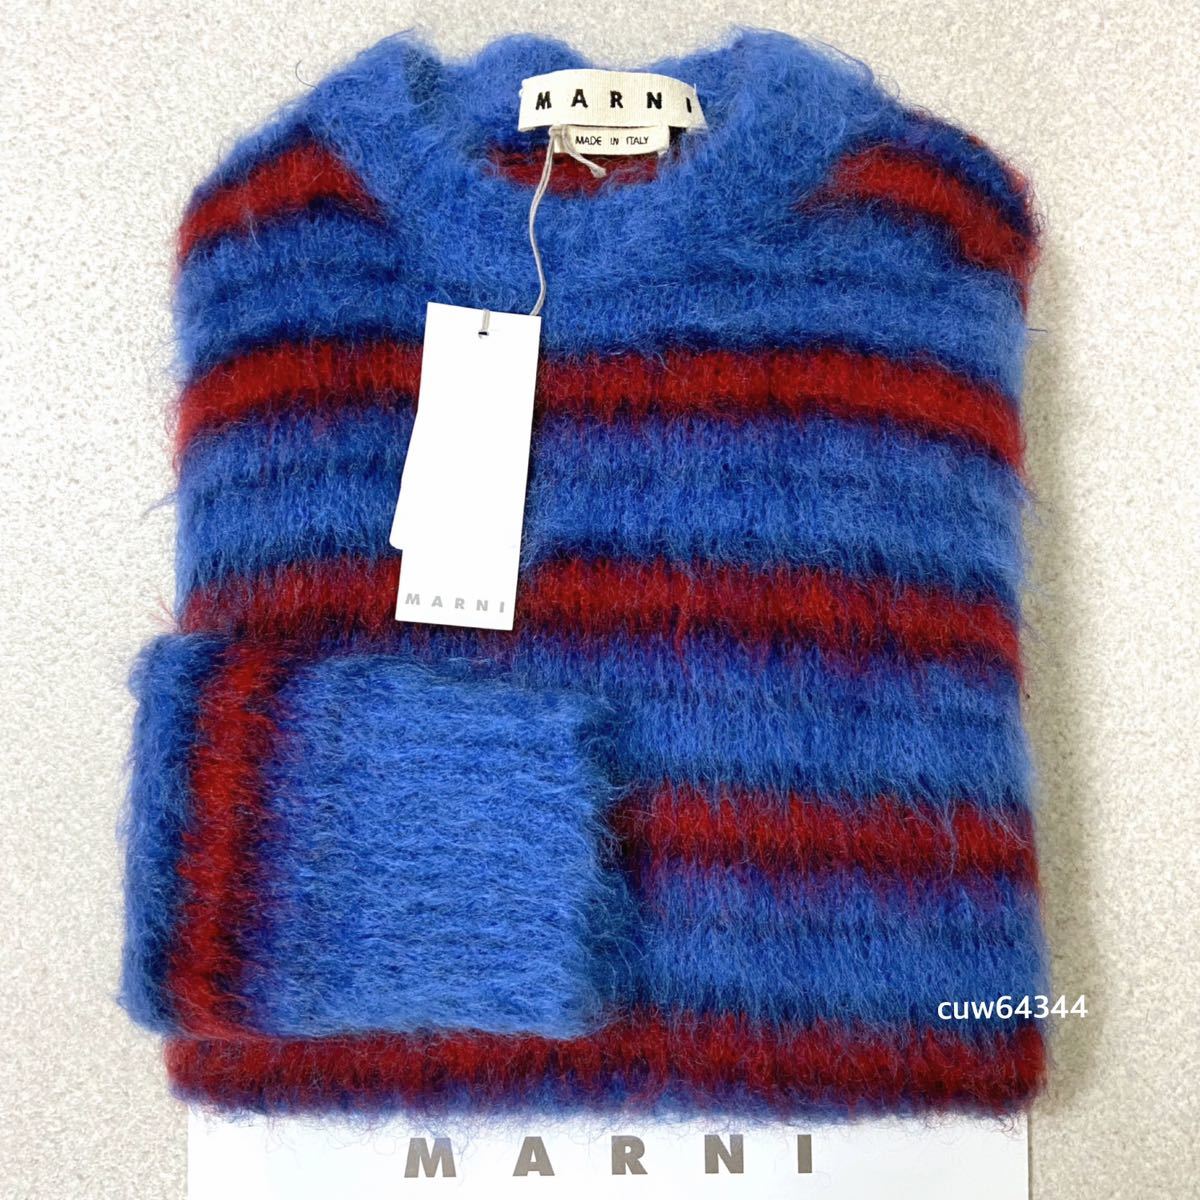  внутренний стандартный товар прекрасный товар 2019 коллекция 46(M~XL соответствует ) Marni MARNI большой размер mo волосы вязаный свитер темно-синий × оттенок красного бирка 